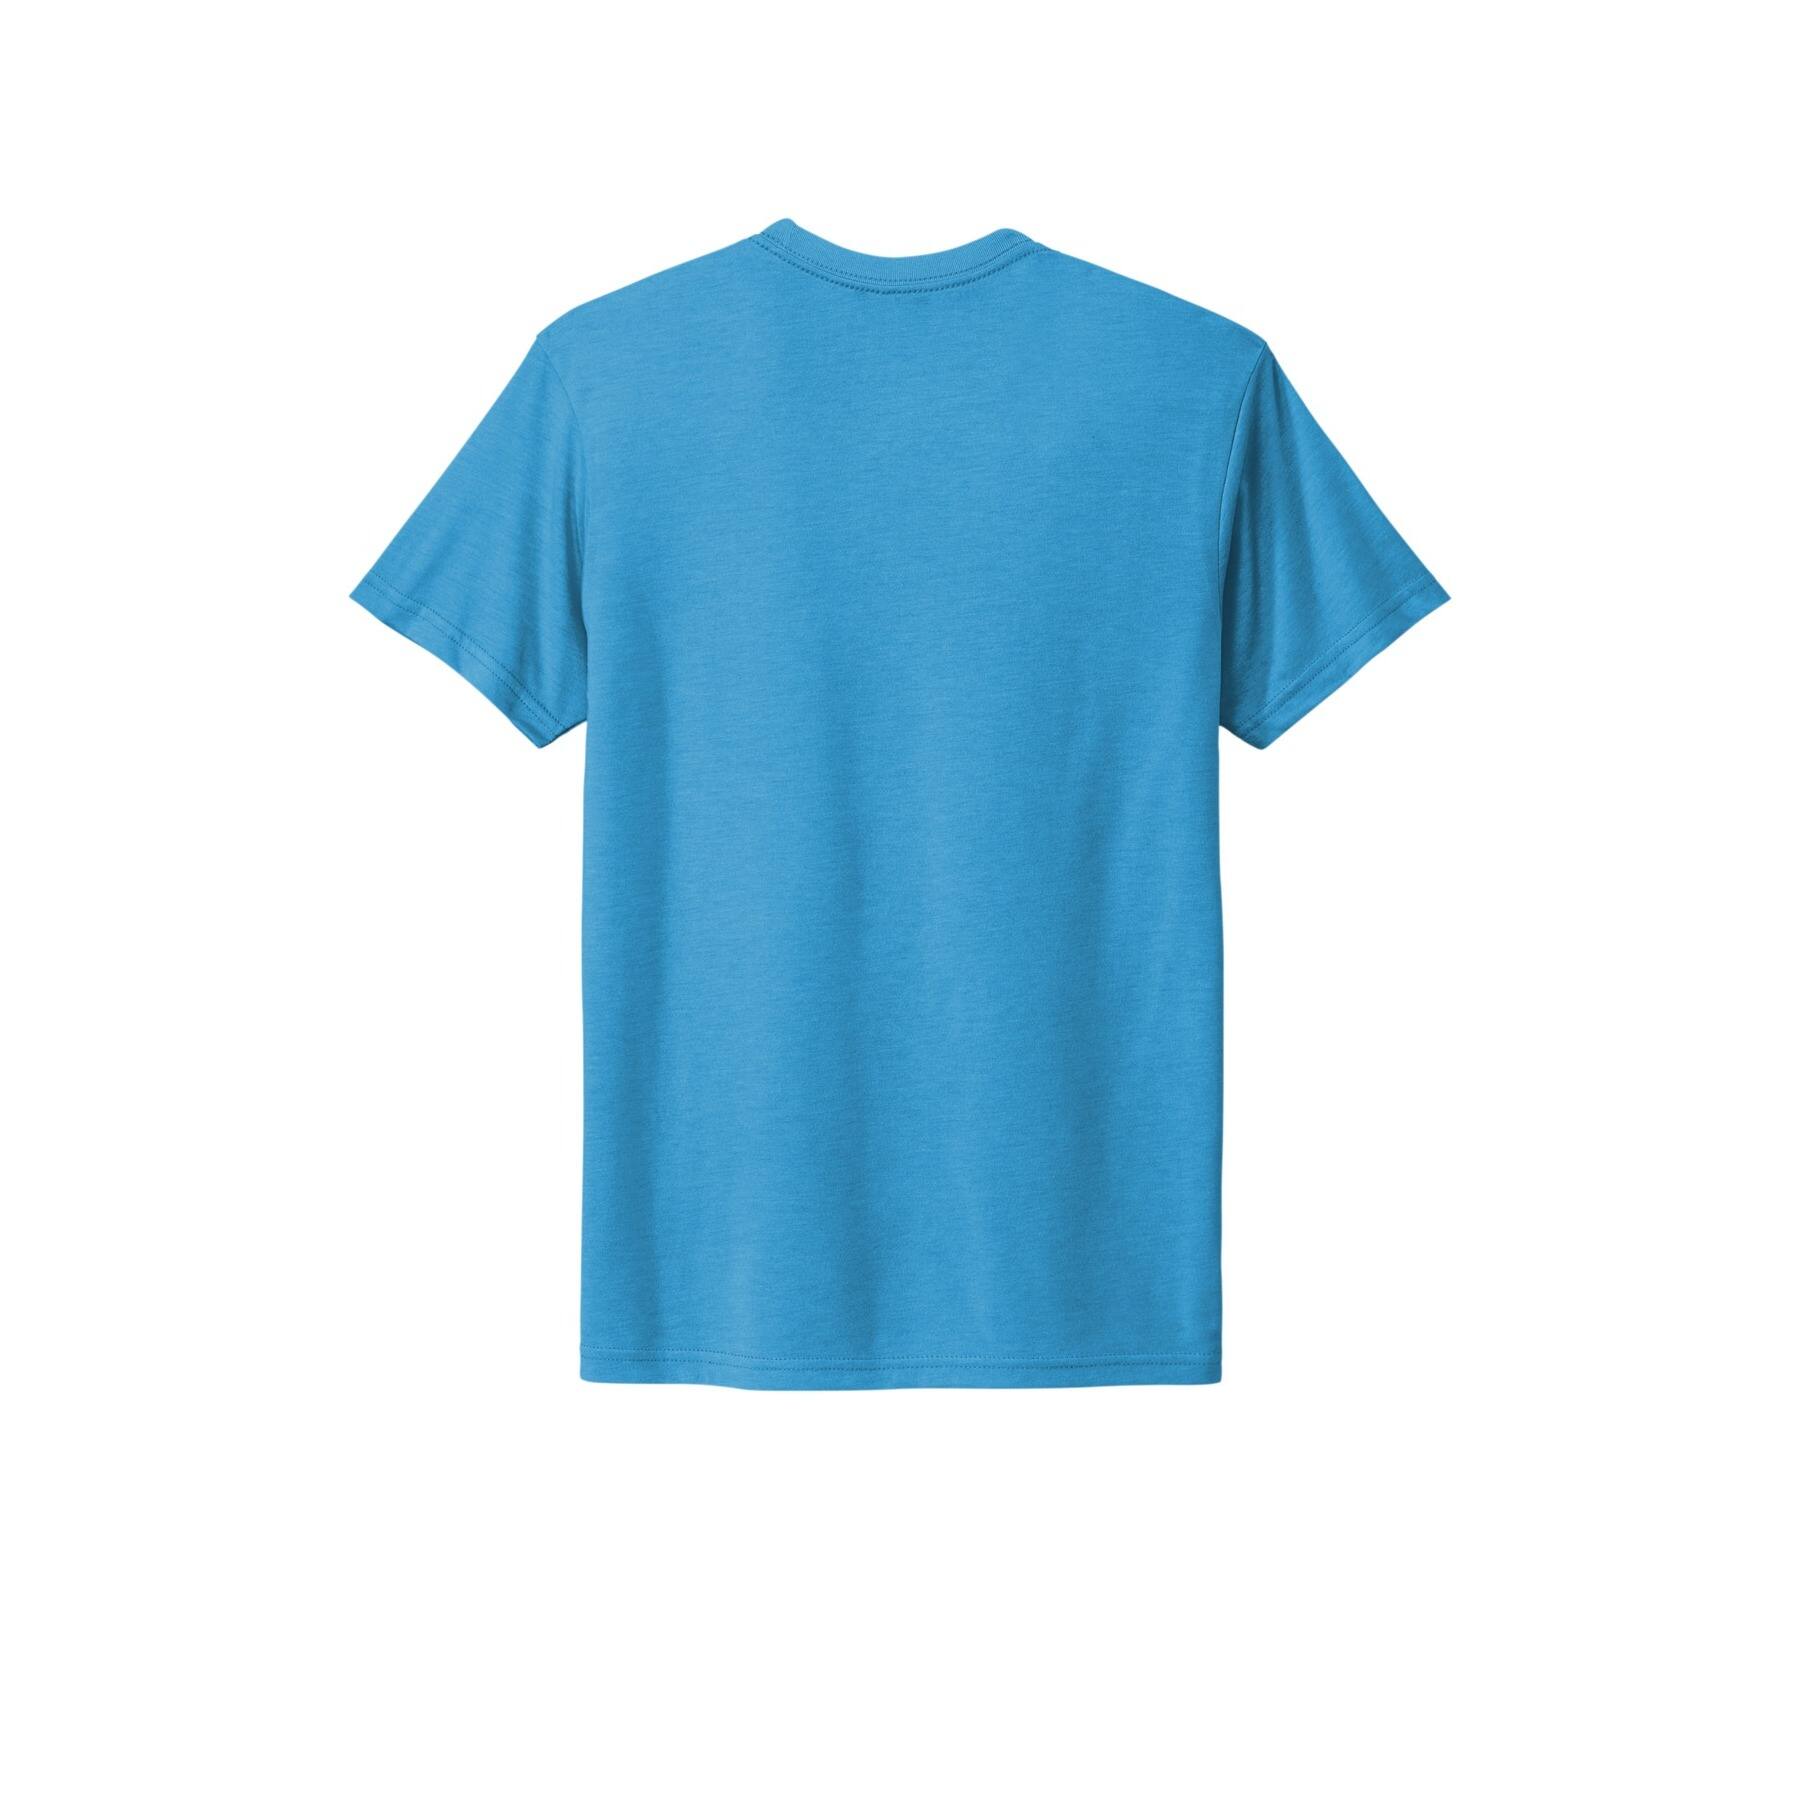 Next Level Vintage Colors Unisex Tri-Blend T-Shirt